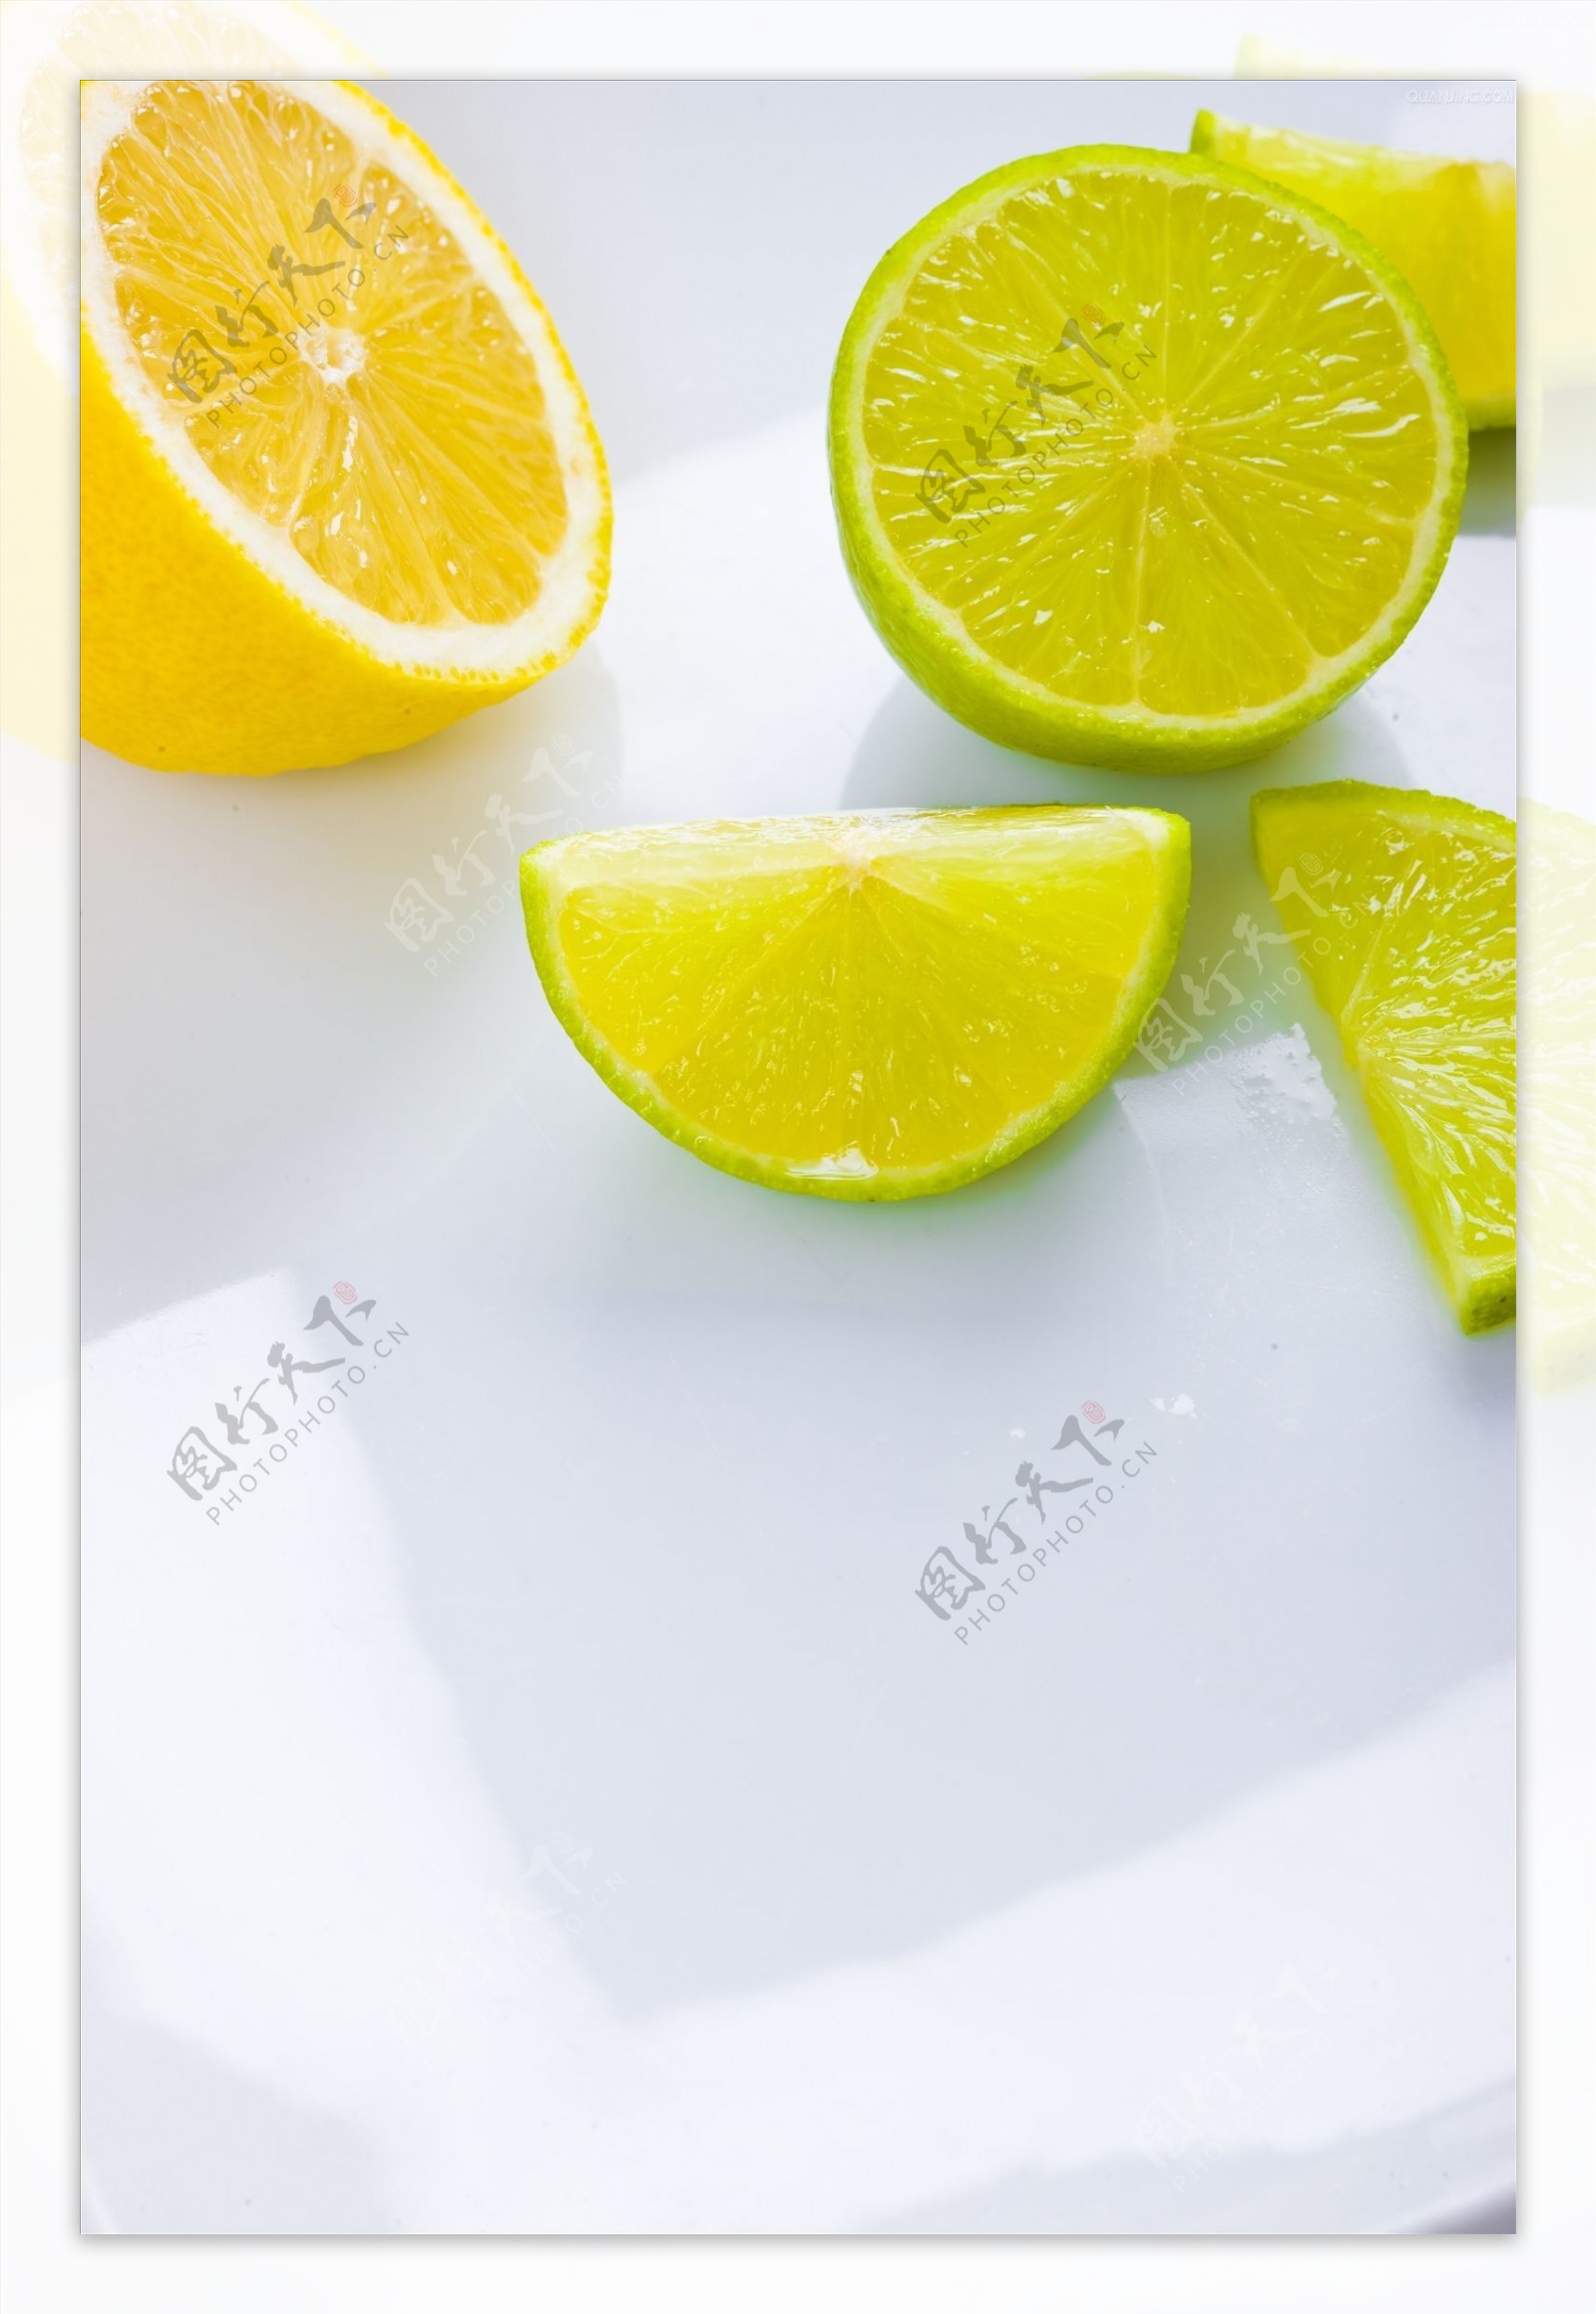 手拿一块切成的柠檬，把鲜汁挤到碗里 库存图片. 图片 包括有 汁液, 食物, 女性, 人员, 玻璃, 成份 - 222461357